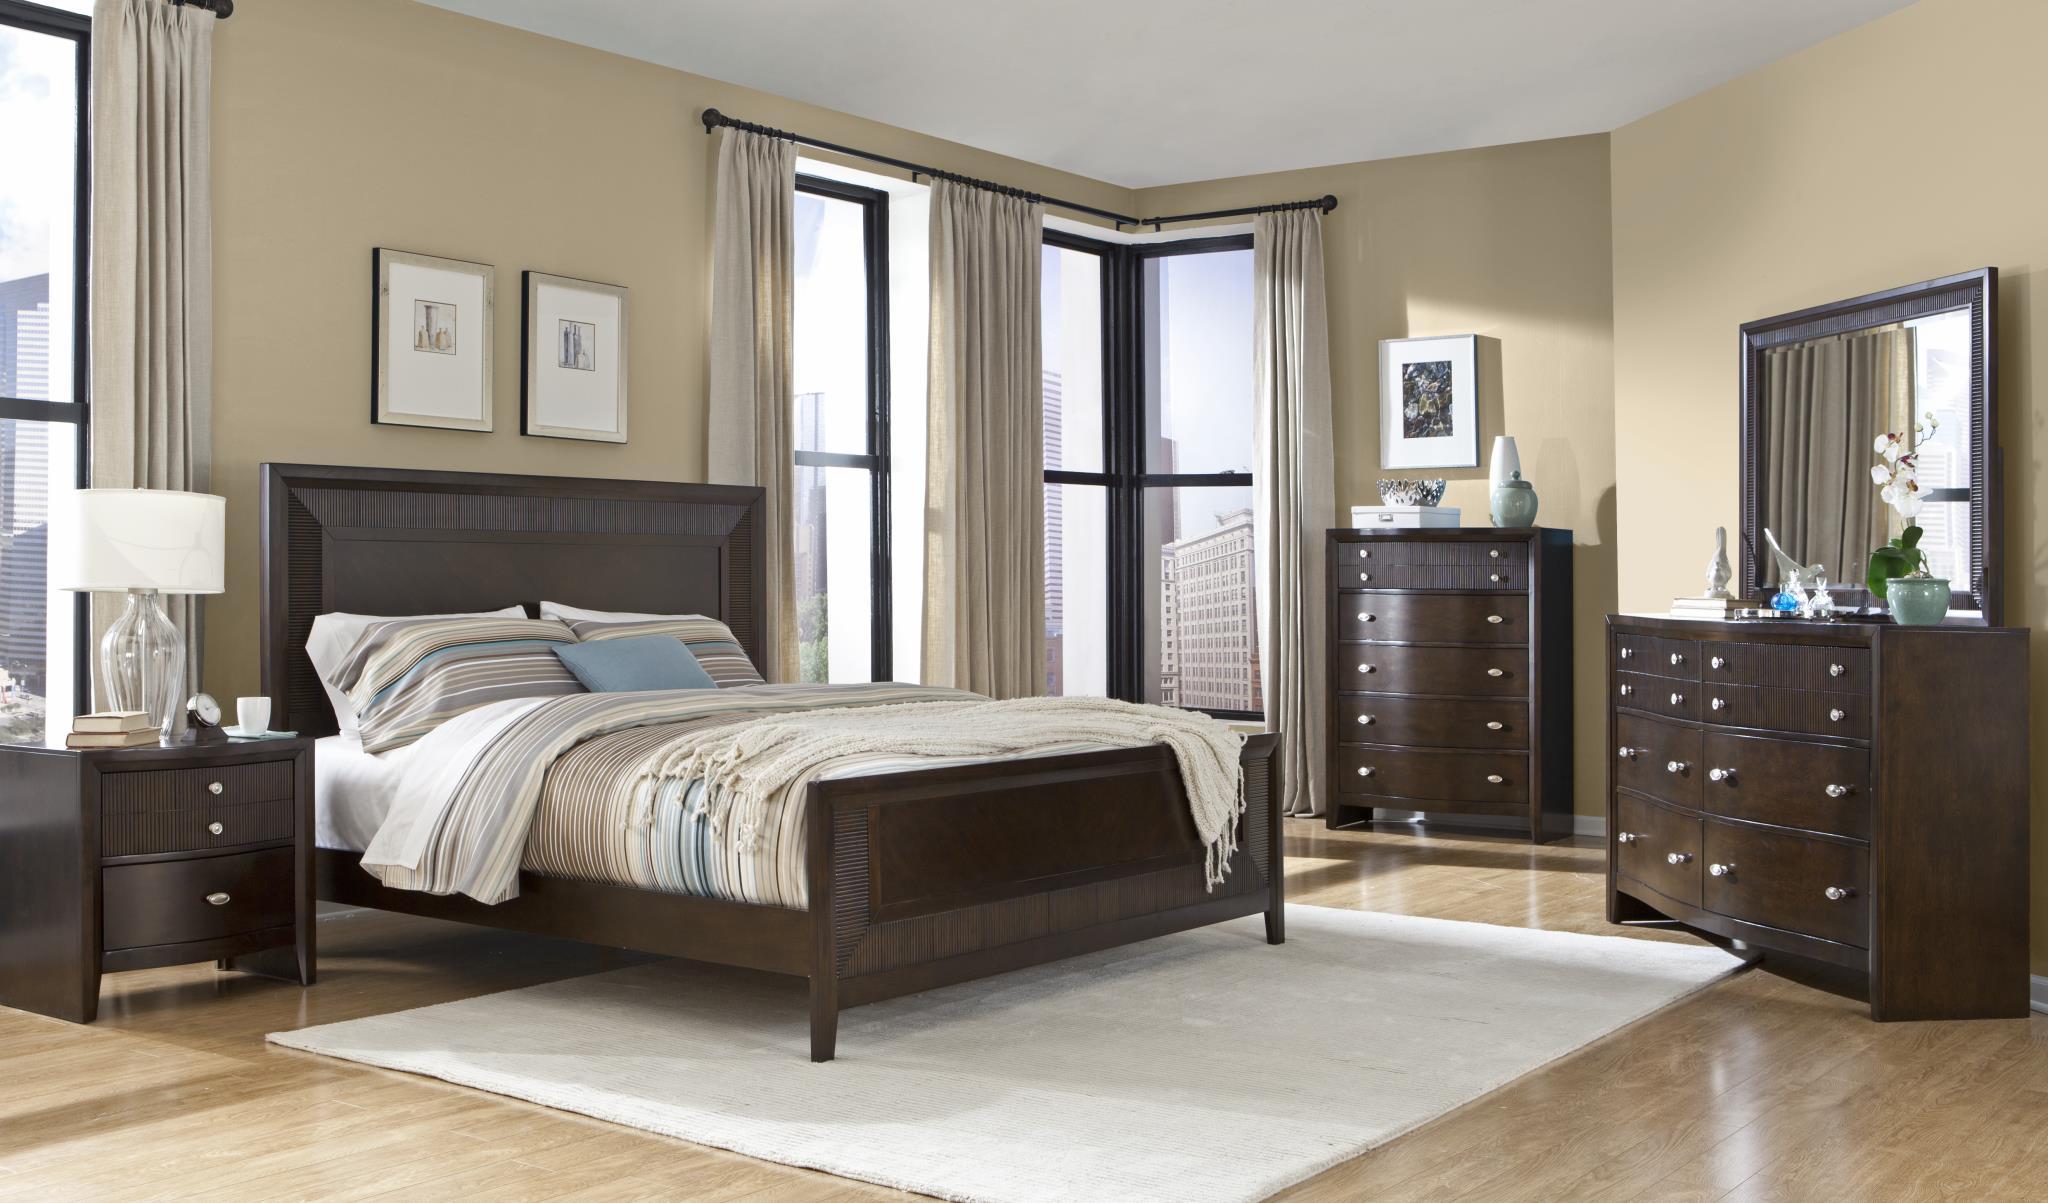 

    
Soflex Elora Espresso Finish Ribbed Wood Queen Bedroom Set 4Pcs Contemporary
